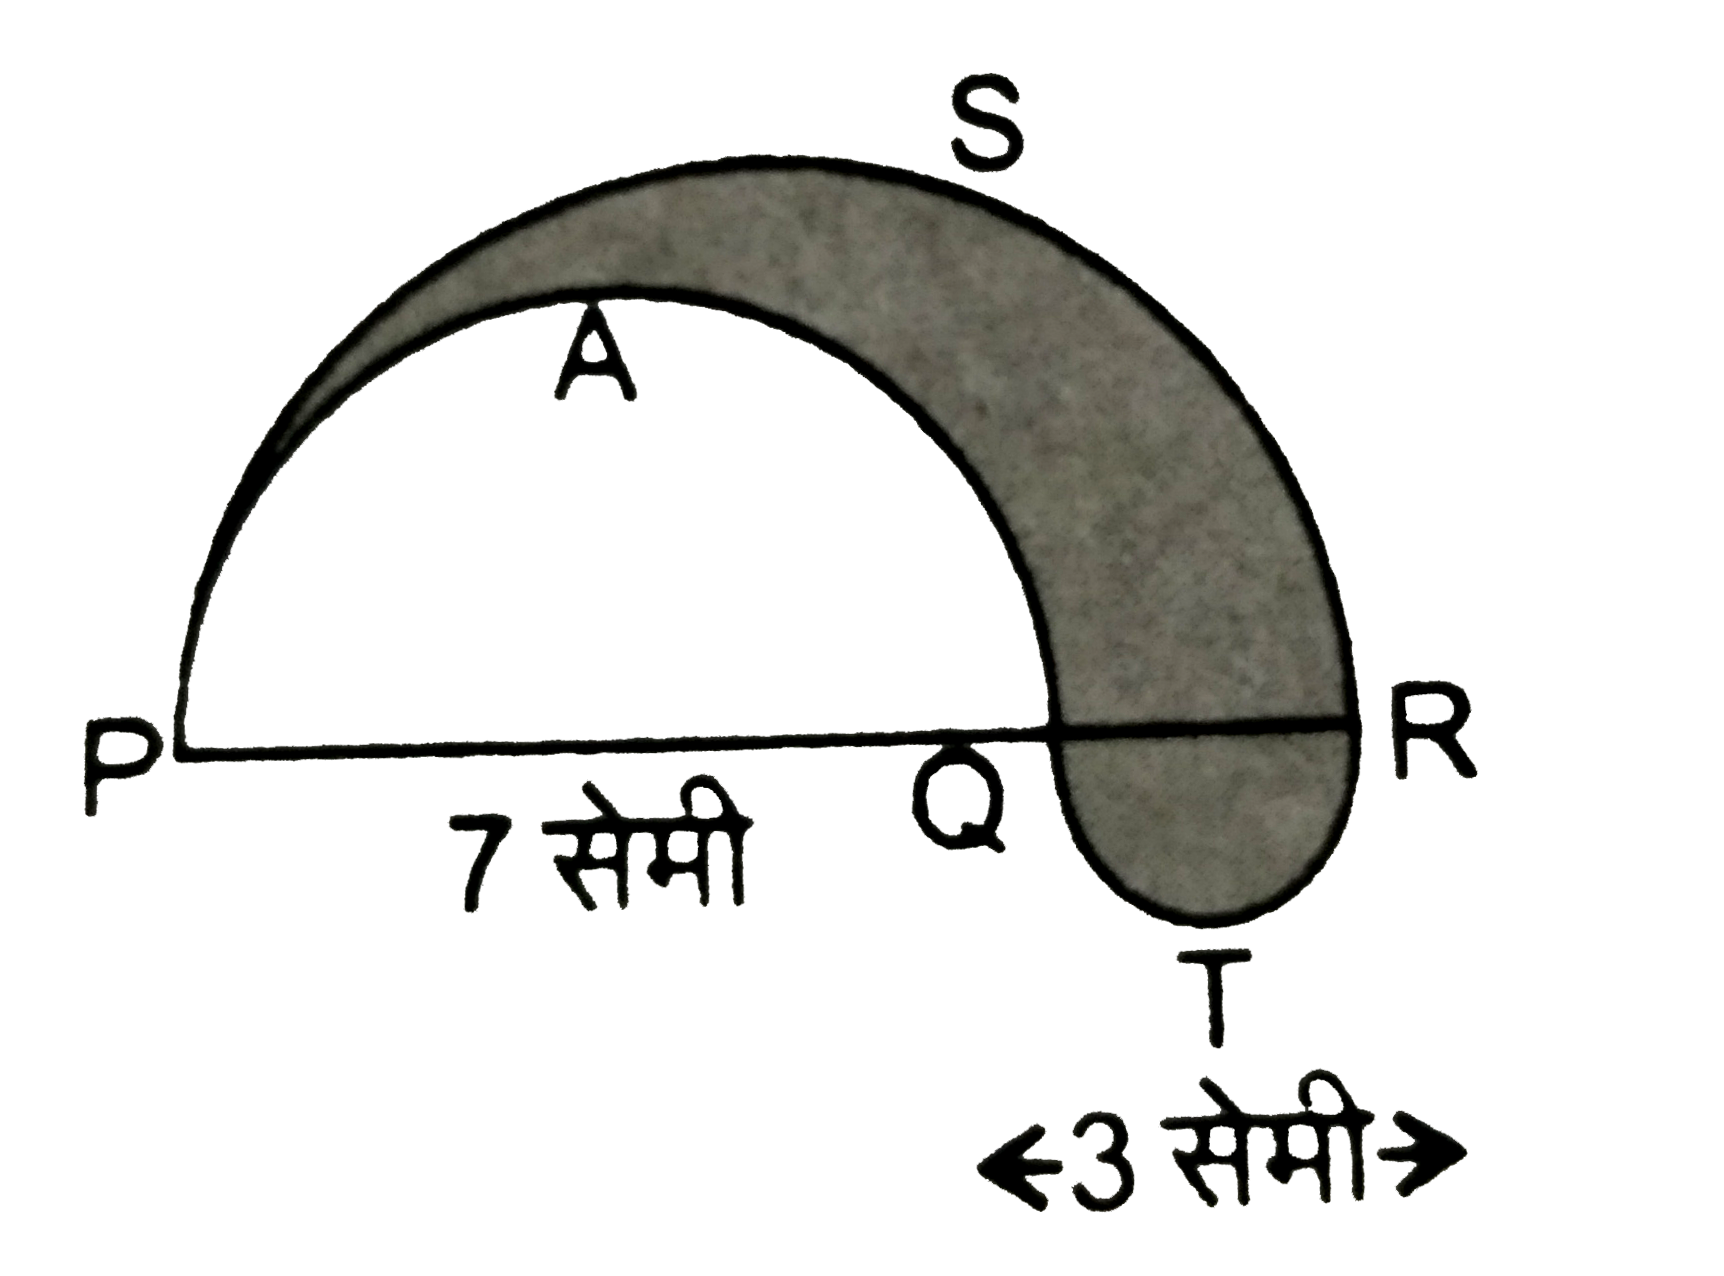 आकृति  में PSR  ,RTQ  और  PAQ  क्रमश : व्यास  10 सेमी  , 3 सेमी  और 7  सेमी  वाले  तीन  अर्द्धवृत  है  छायांकित  भाग  का परिमाप  ज्ञात  कीजिए ।